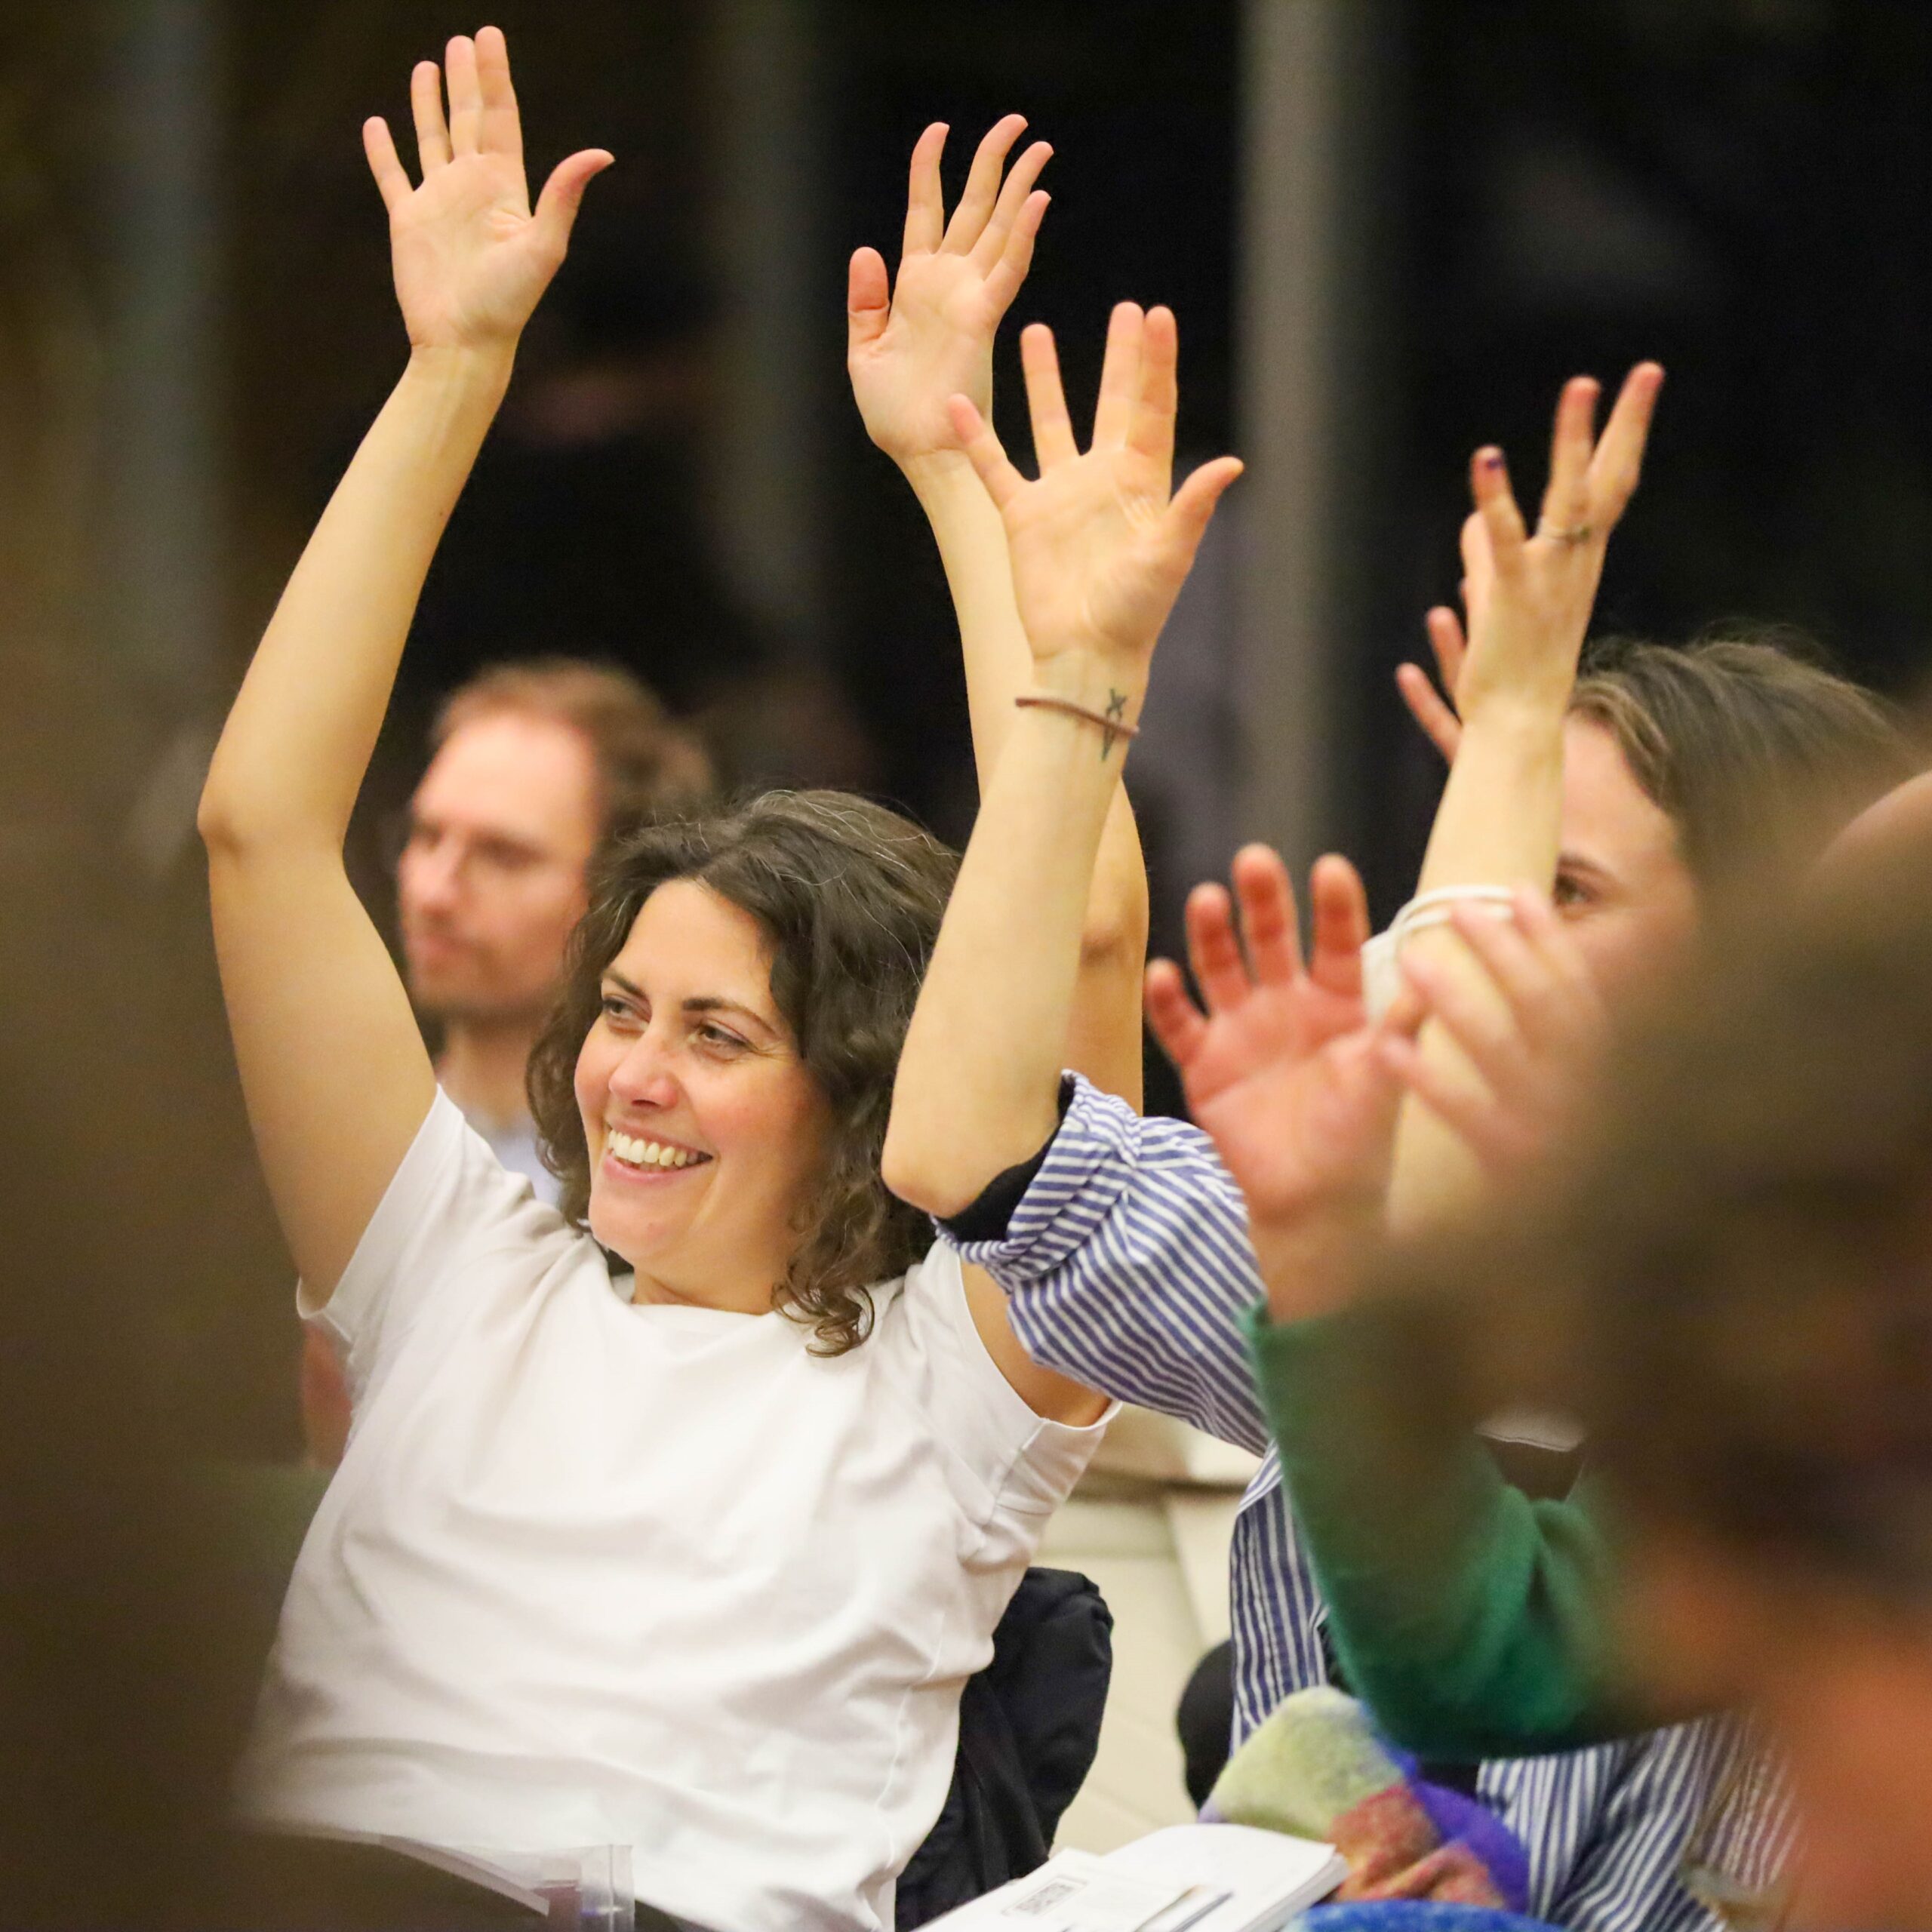 Teilnehmer:innen halten die Hände bei einer Konferenz in die Höhe.